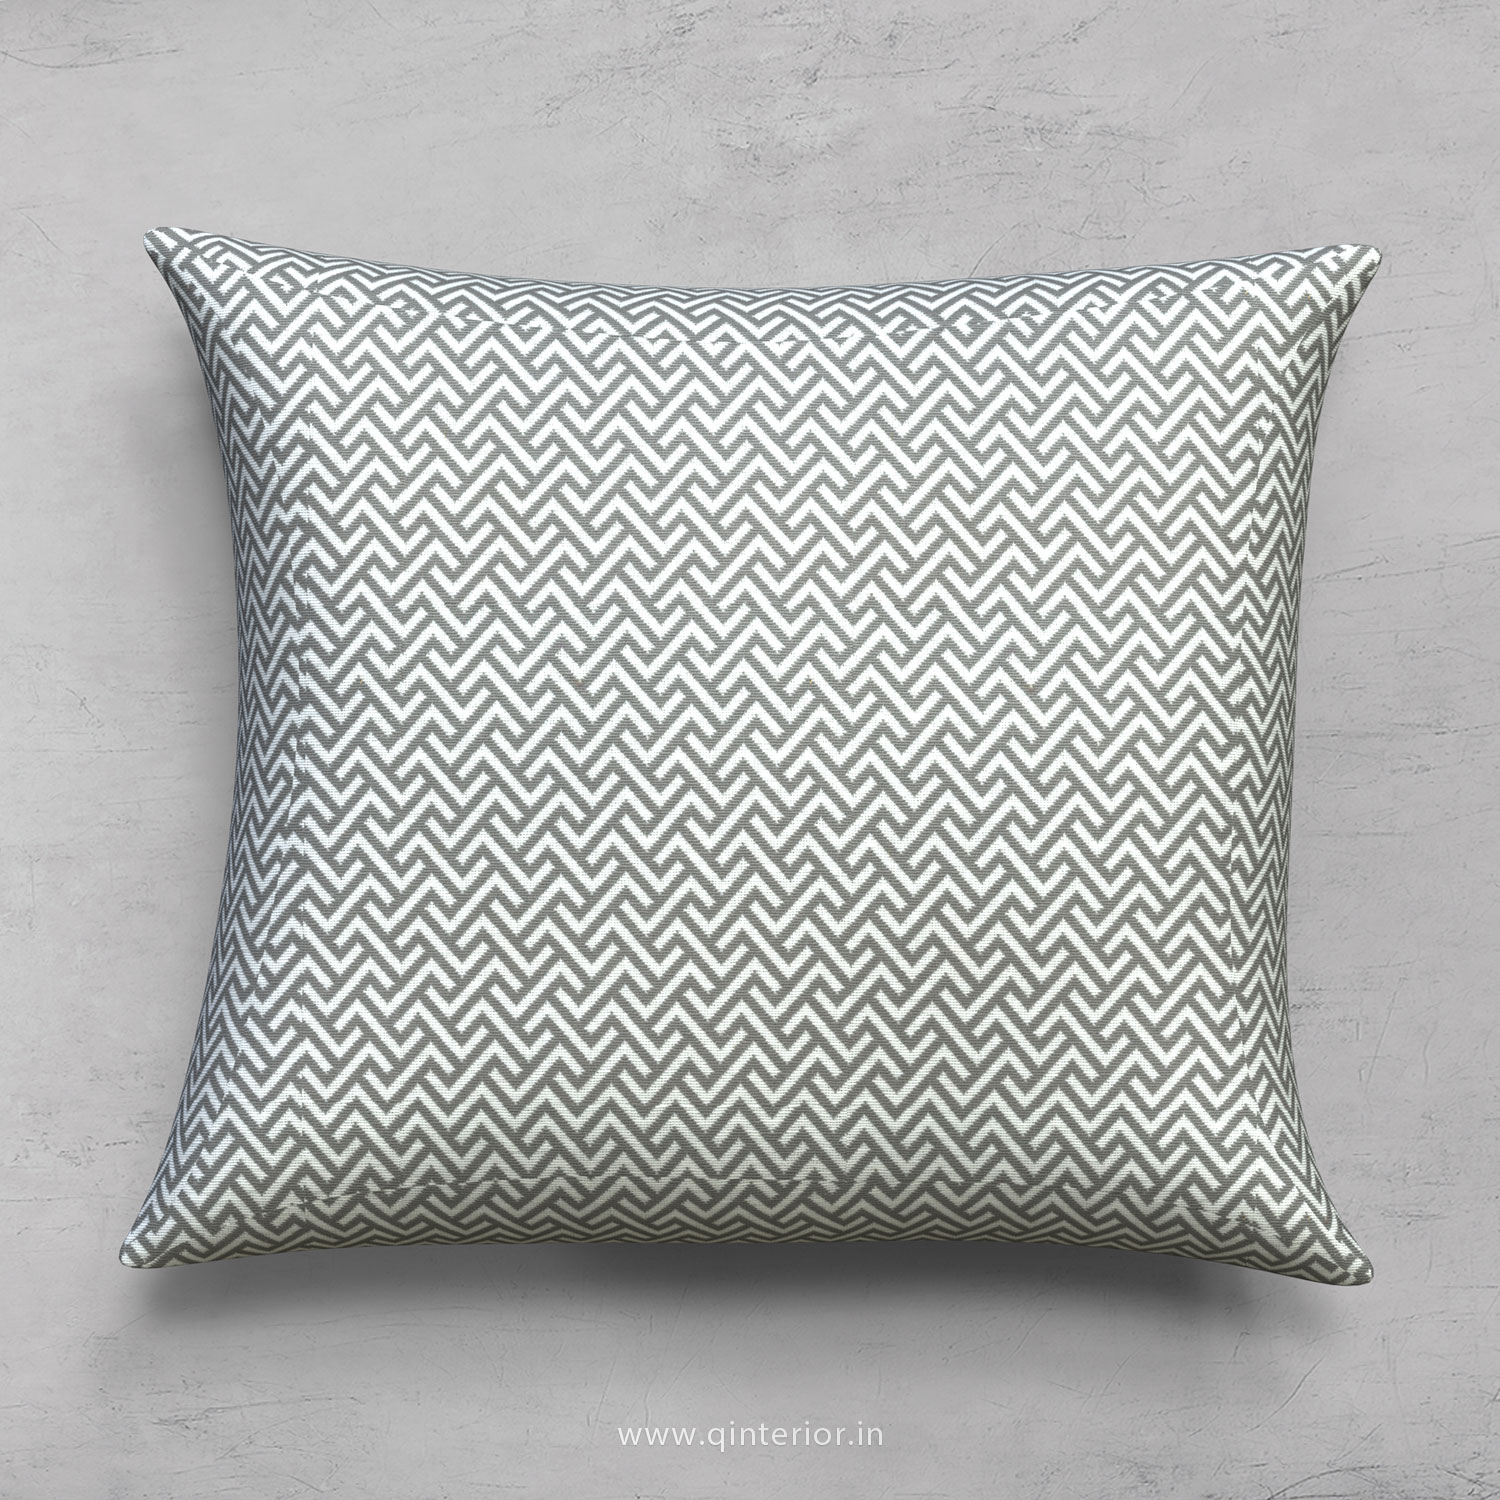 Cushion With Cushion Cover in Jacquard- CUS001 JQ10